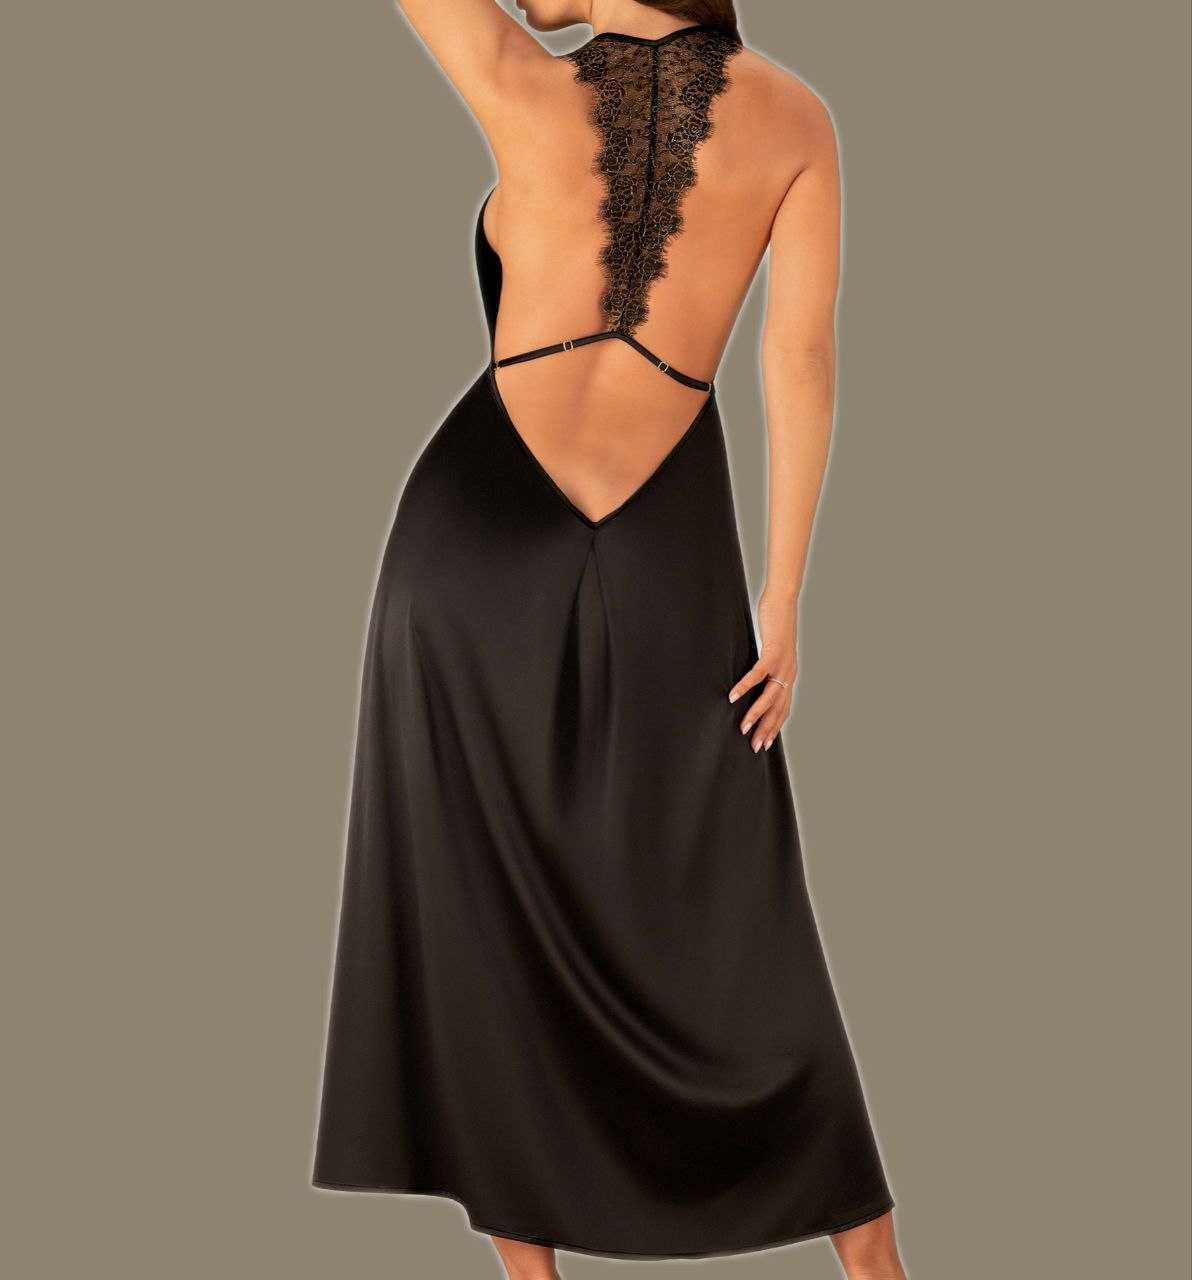 Nowy produkt–sukienka satynowa Agatya by Obsessive S/M w niskiej cenie